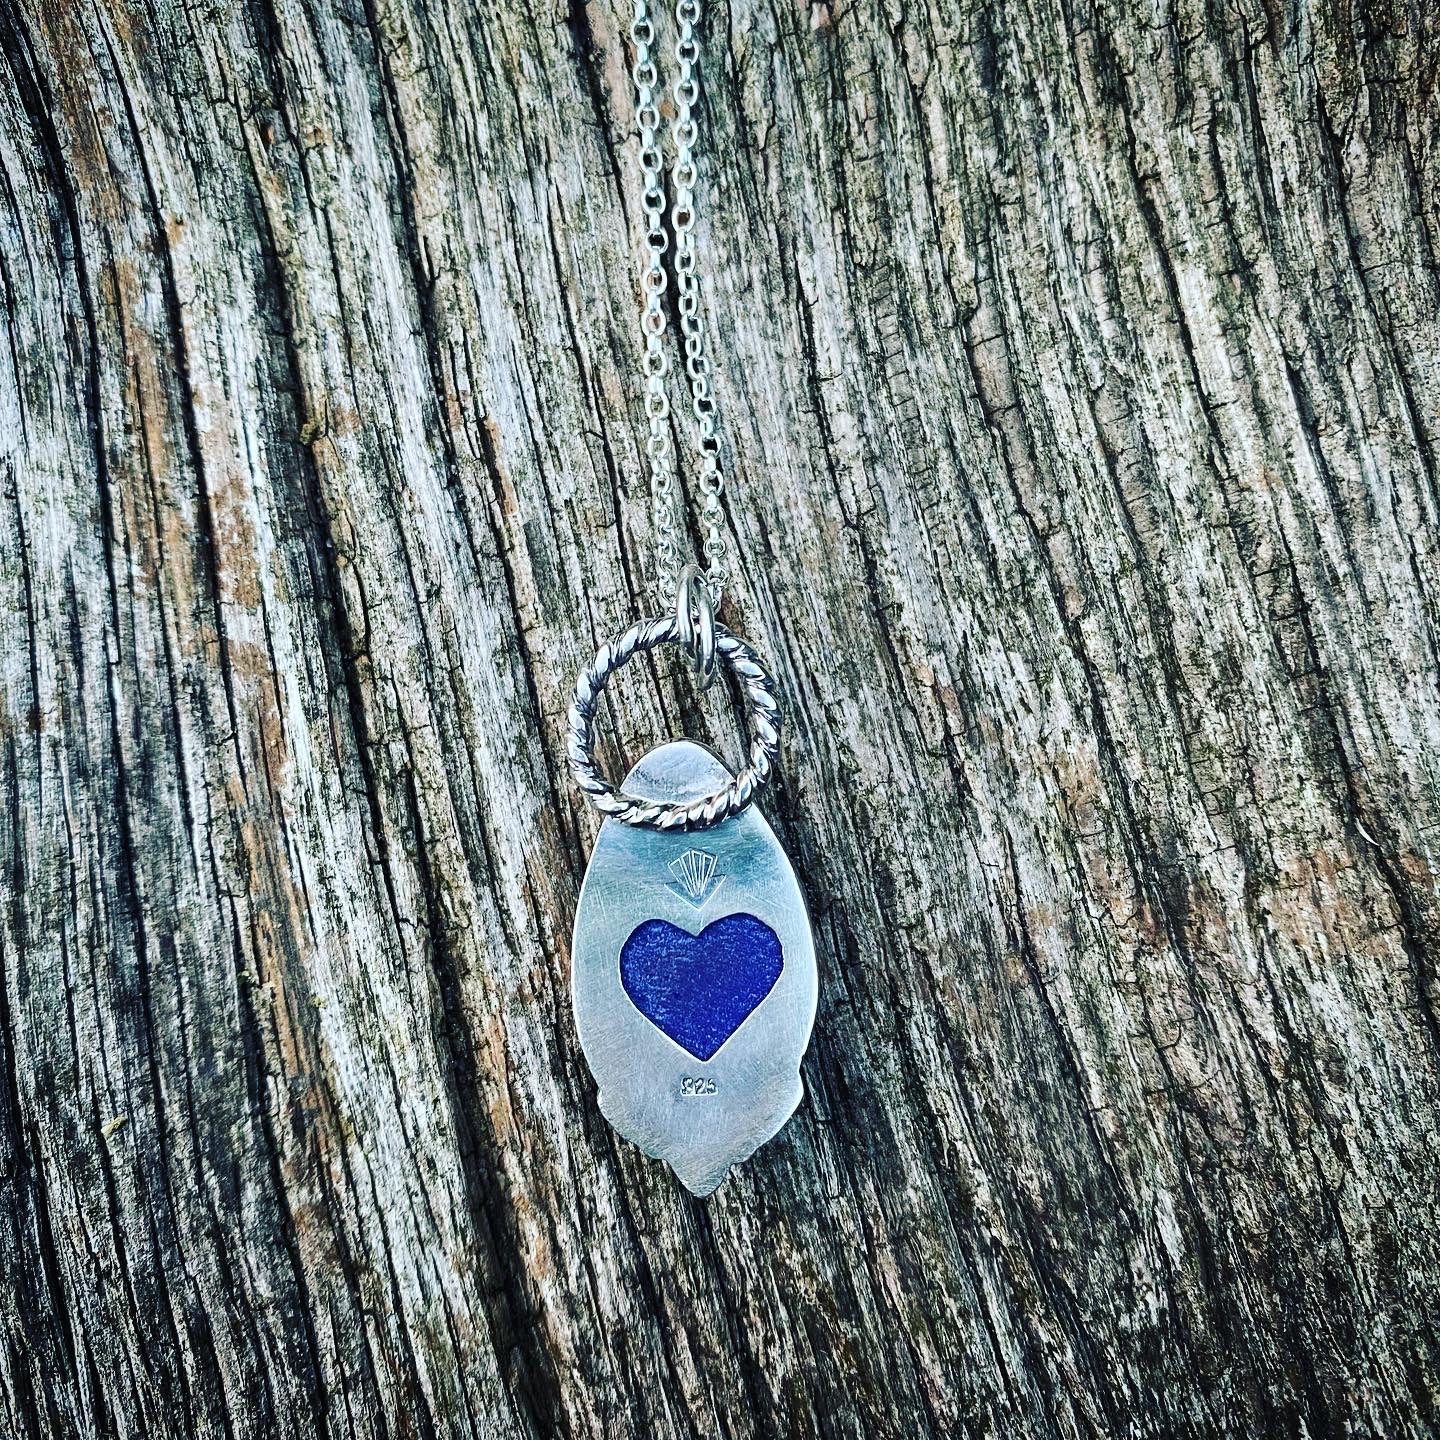 Beautiful blue druzy quartz pendant necklace